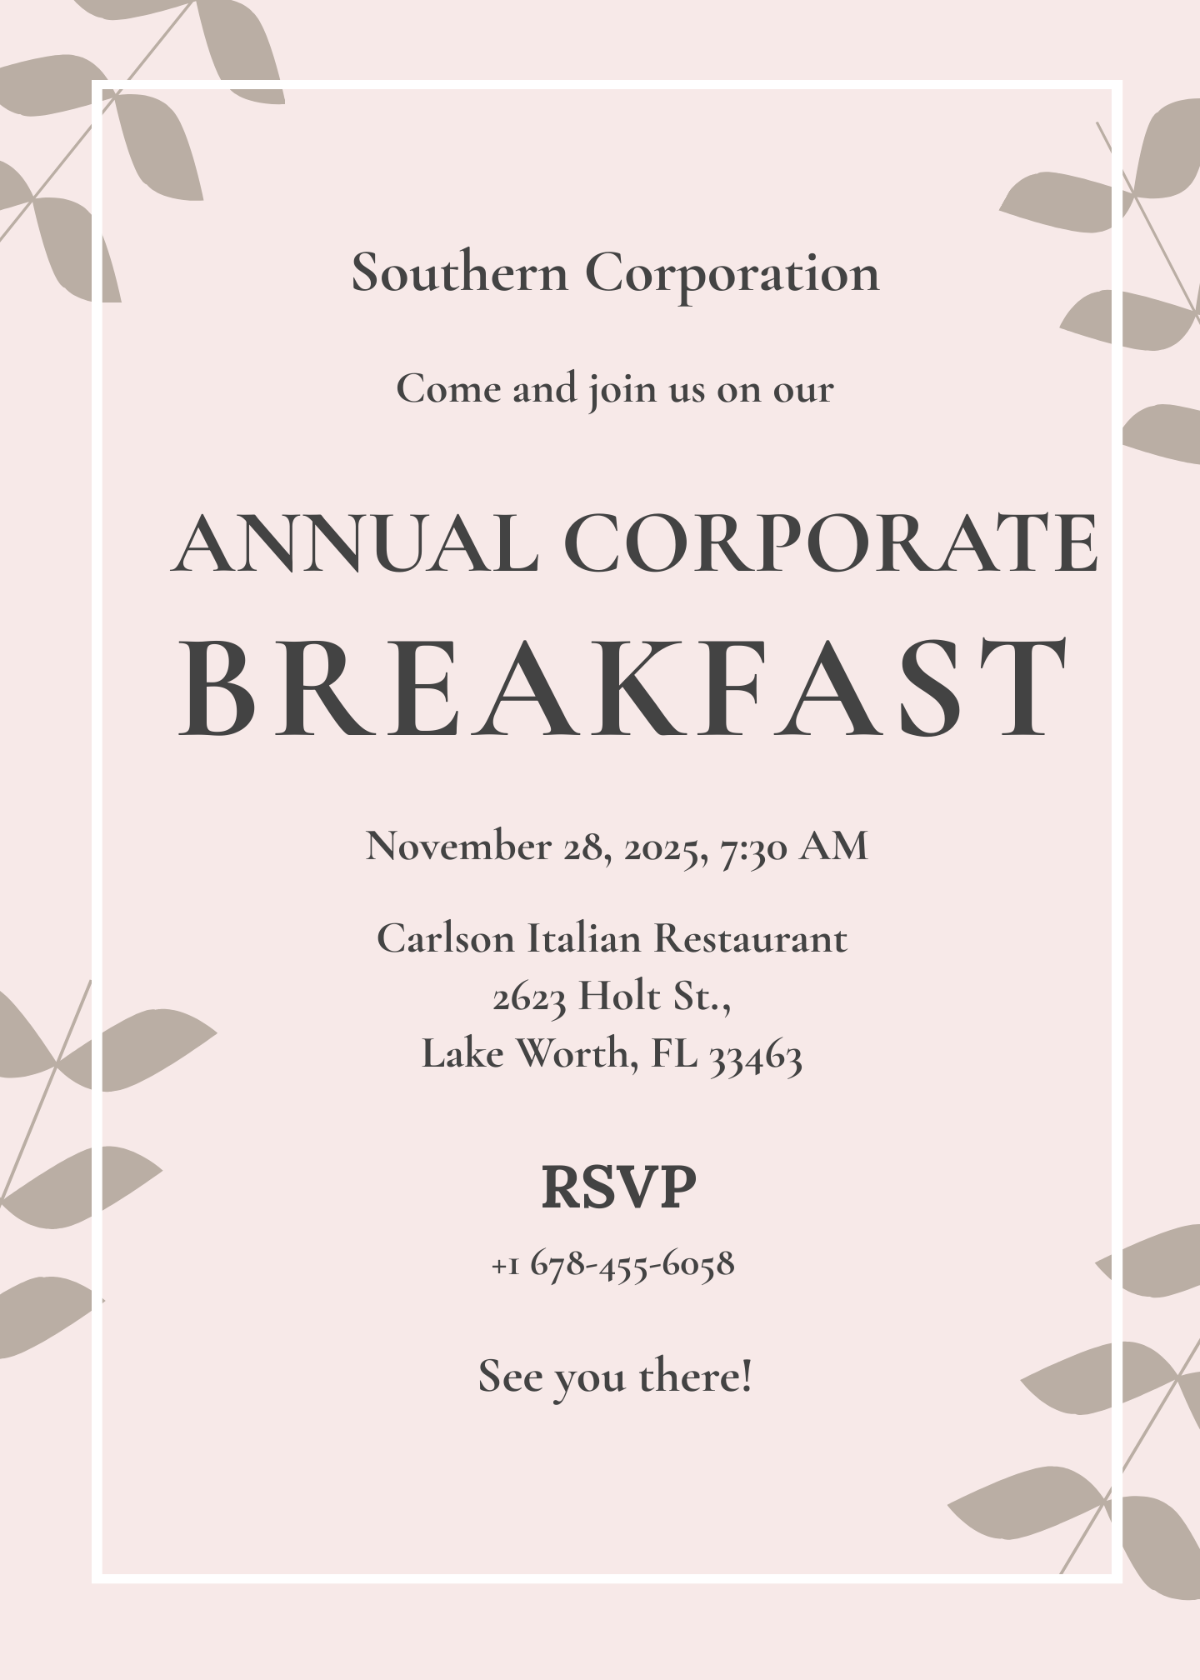 Corporate Annual Breakfast Invitation Template